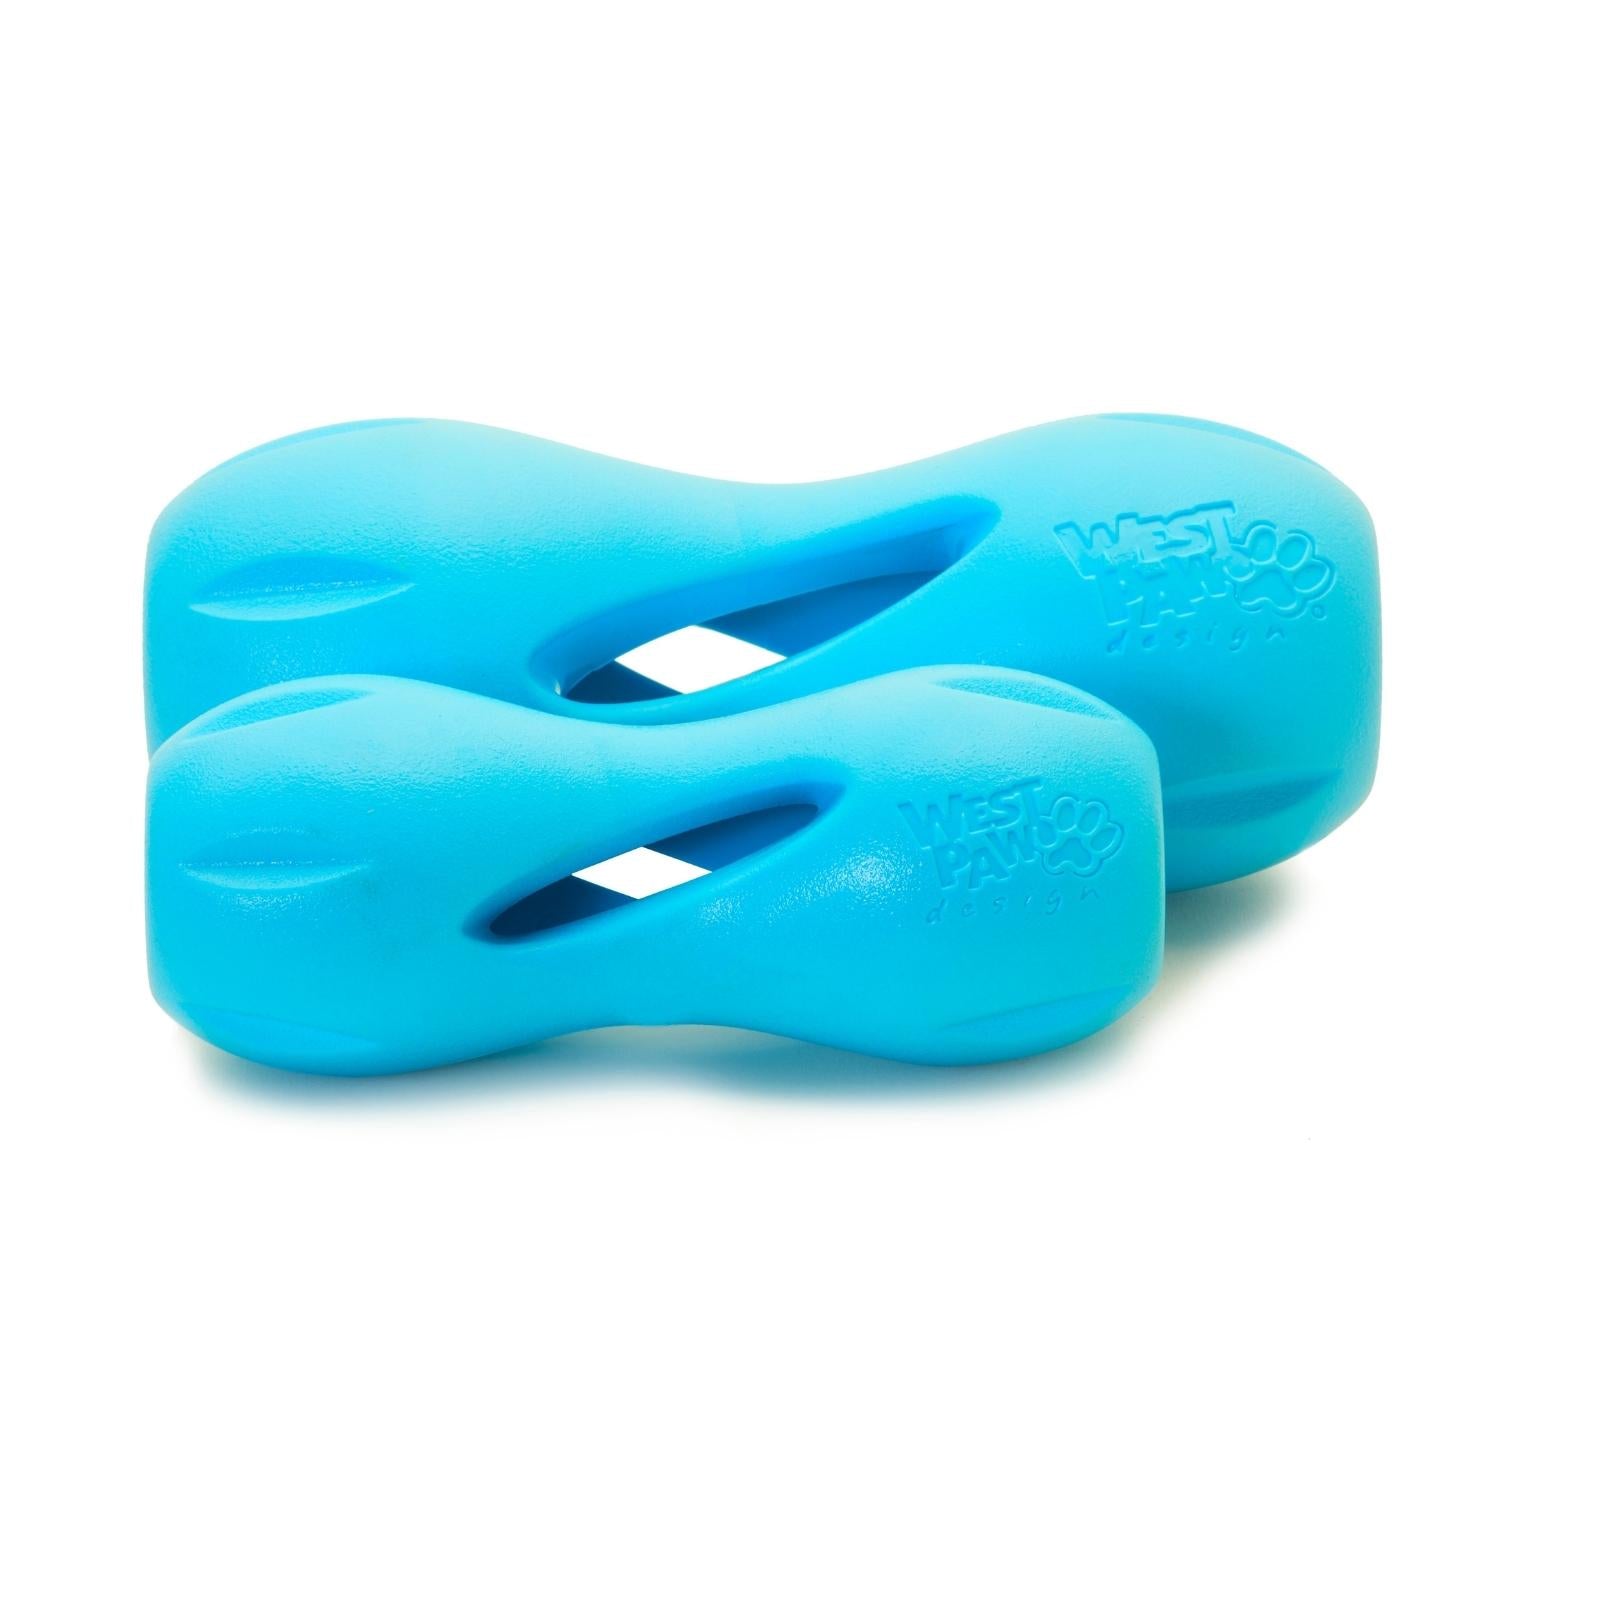 QWIZL de West Paw® color Azul - Juguete Dispensador de Premios para Perros